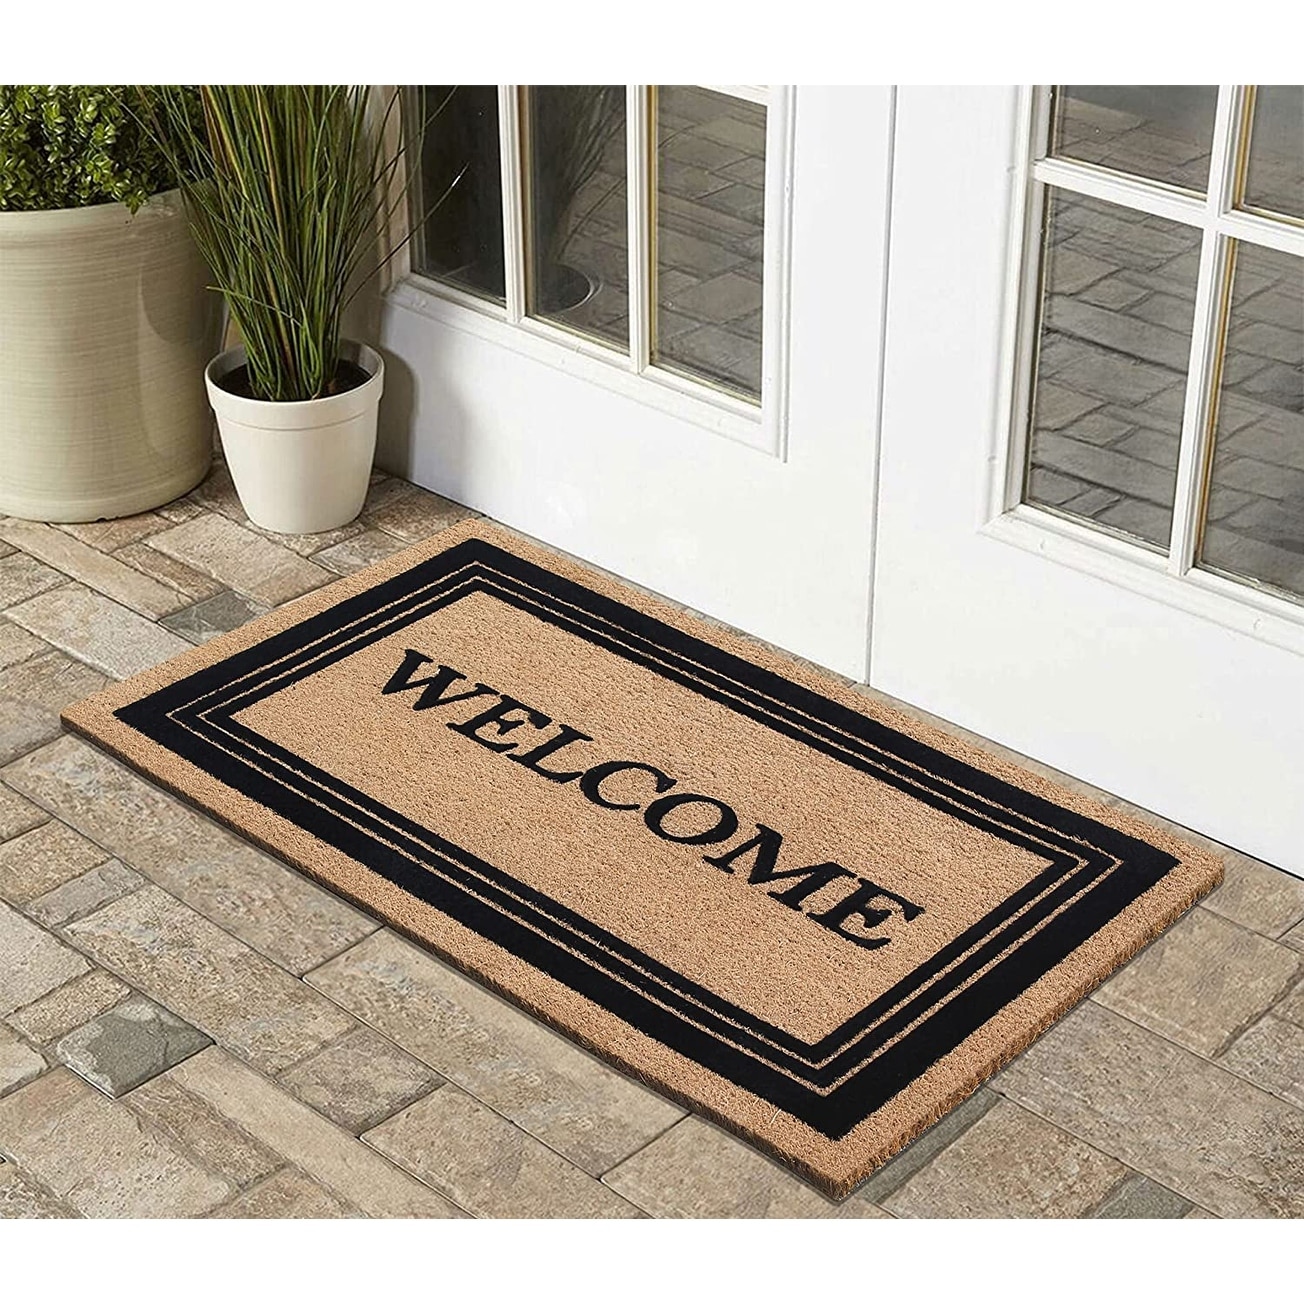 Non Slip Rubber Door Mat With Coir Inserts Welcome Floor Entrance